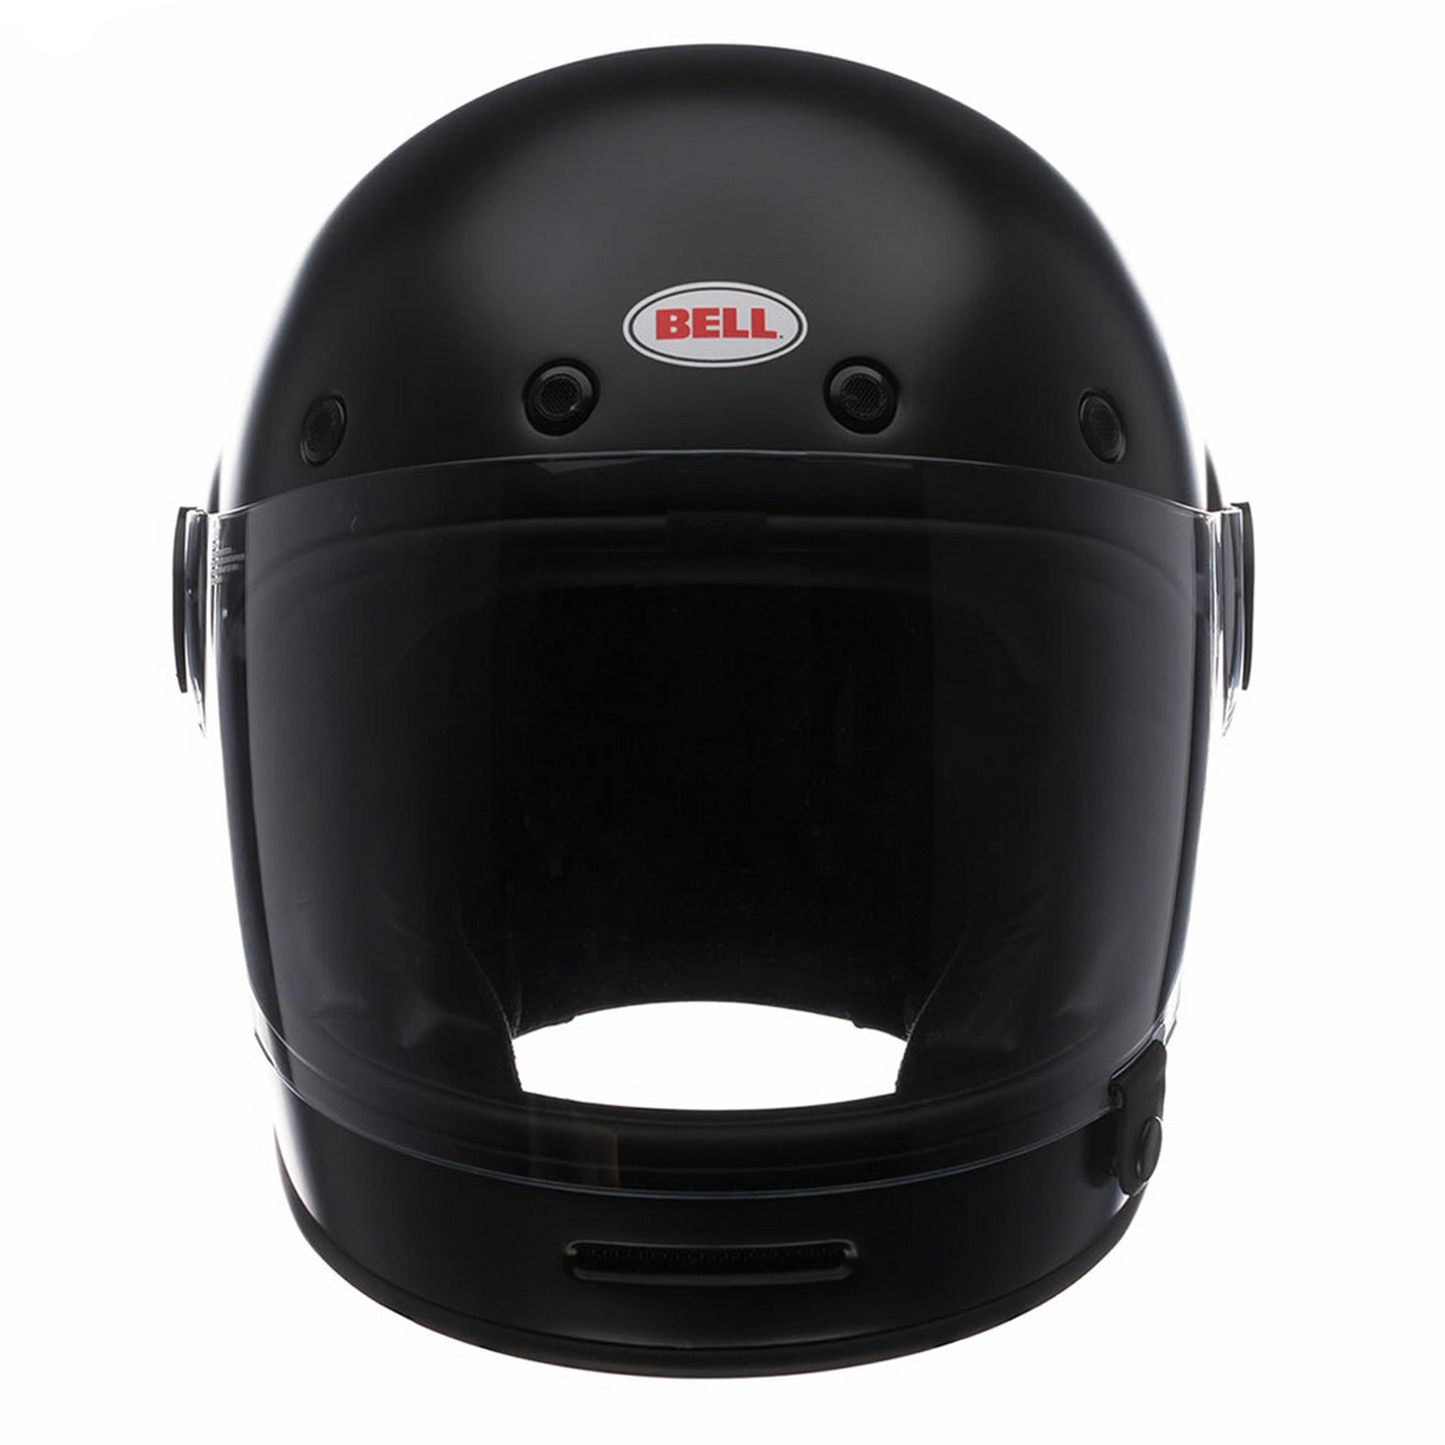 Bell Bullitt DLX - Solid Matt Black - Includes Dark Visor